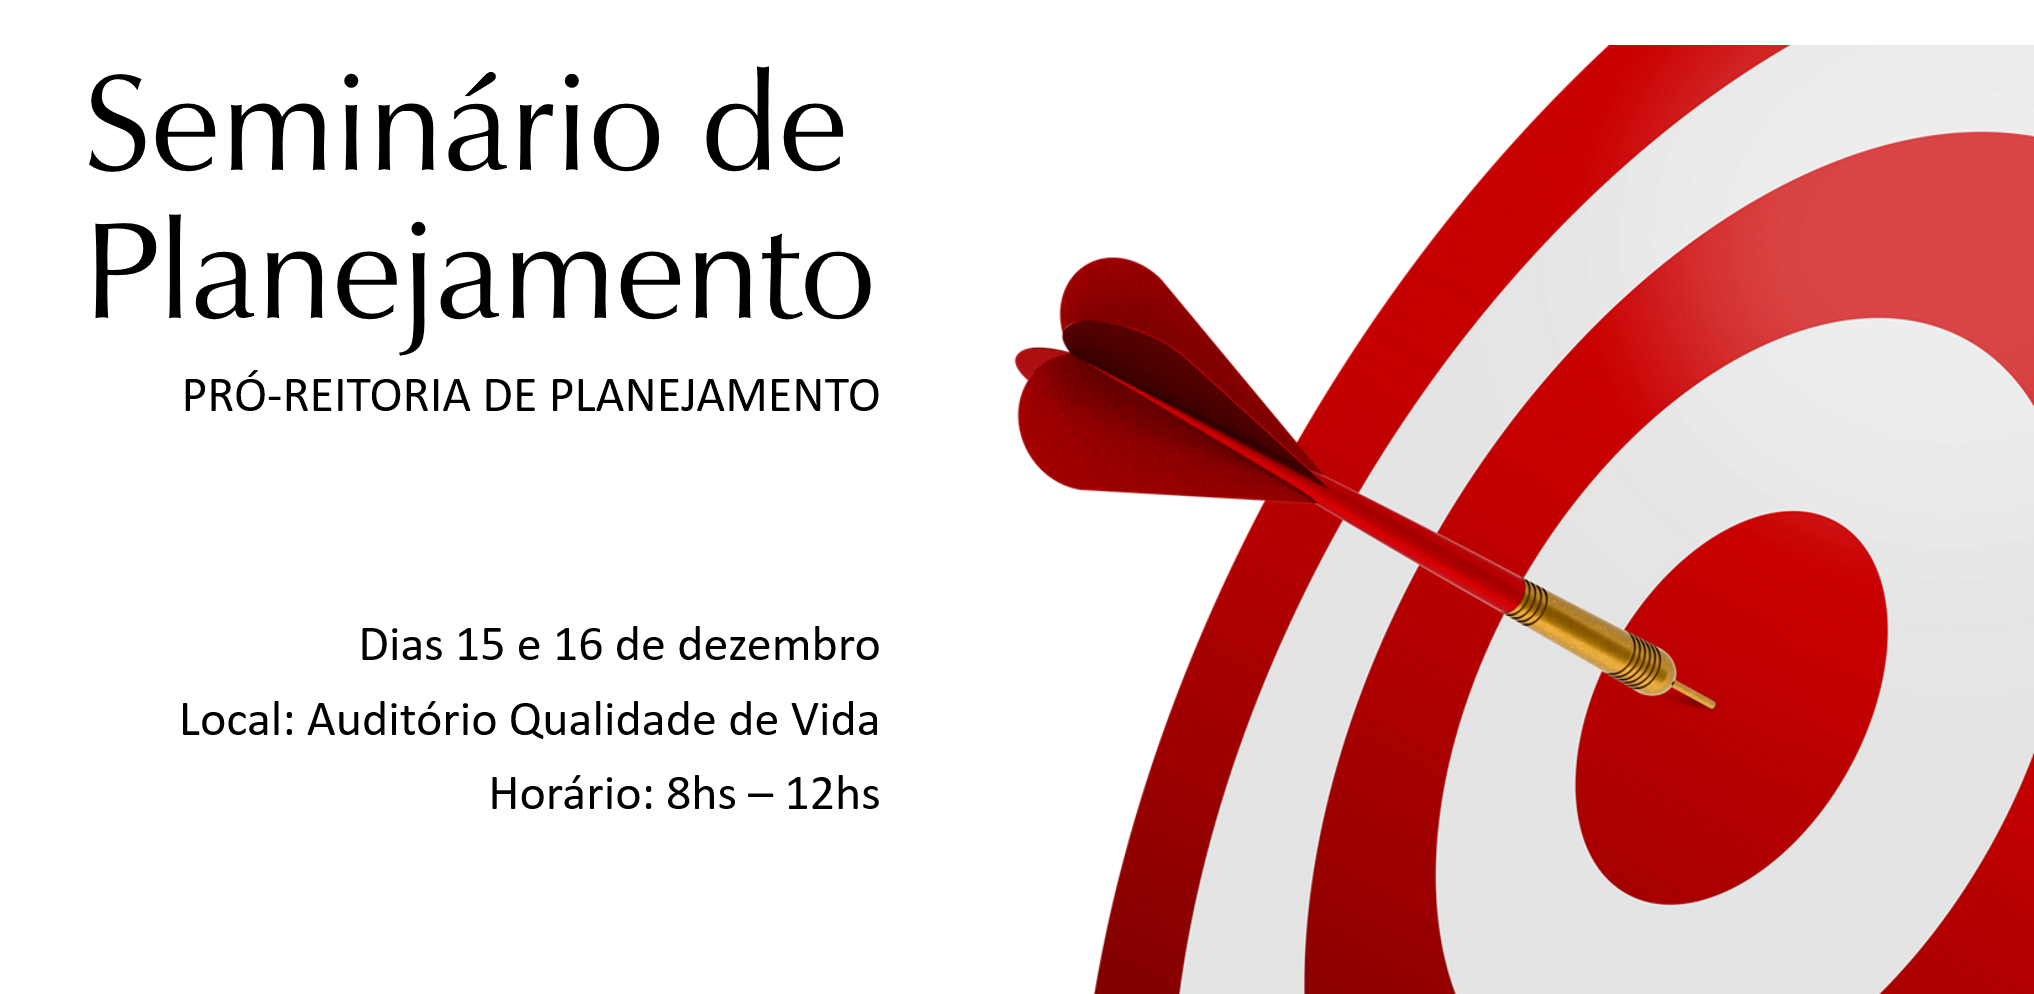 Imagem de um alvo. Fundo branco, frase em preto: "Seminário de Planjemanto - PROPLAN - Dias 15 e 16 de dezembro.